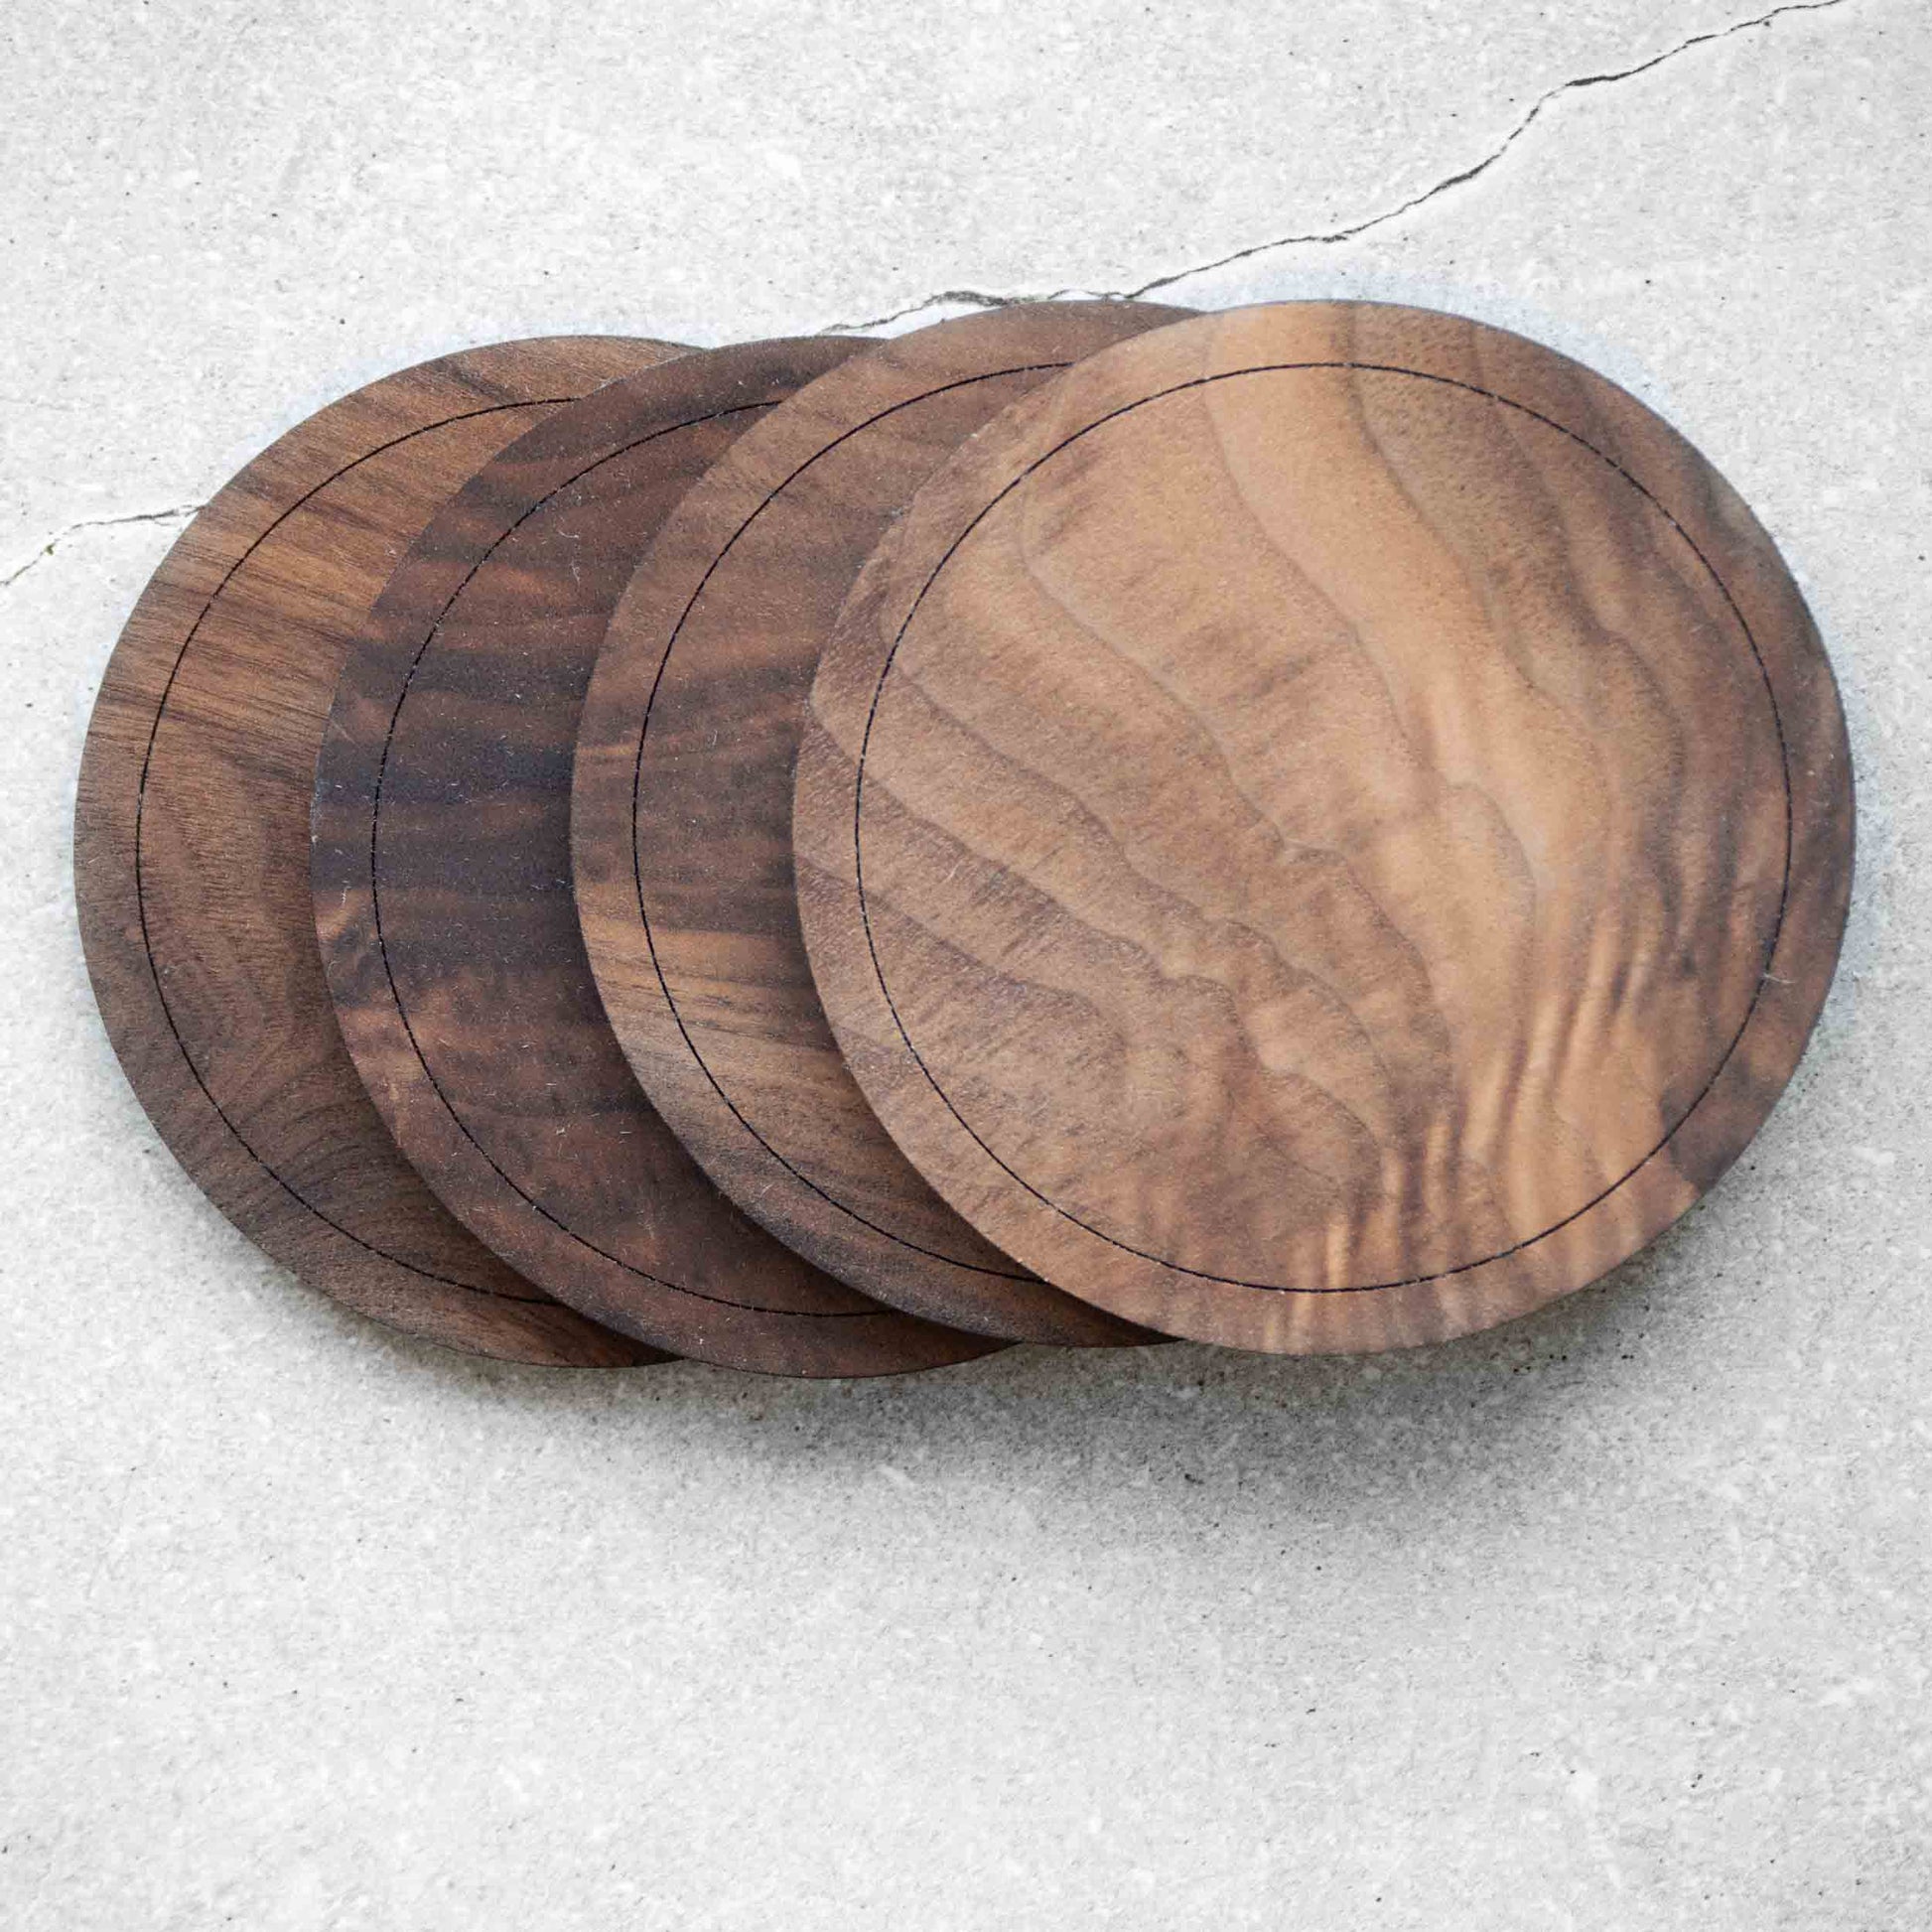 Maple Wood Coasters